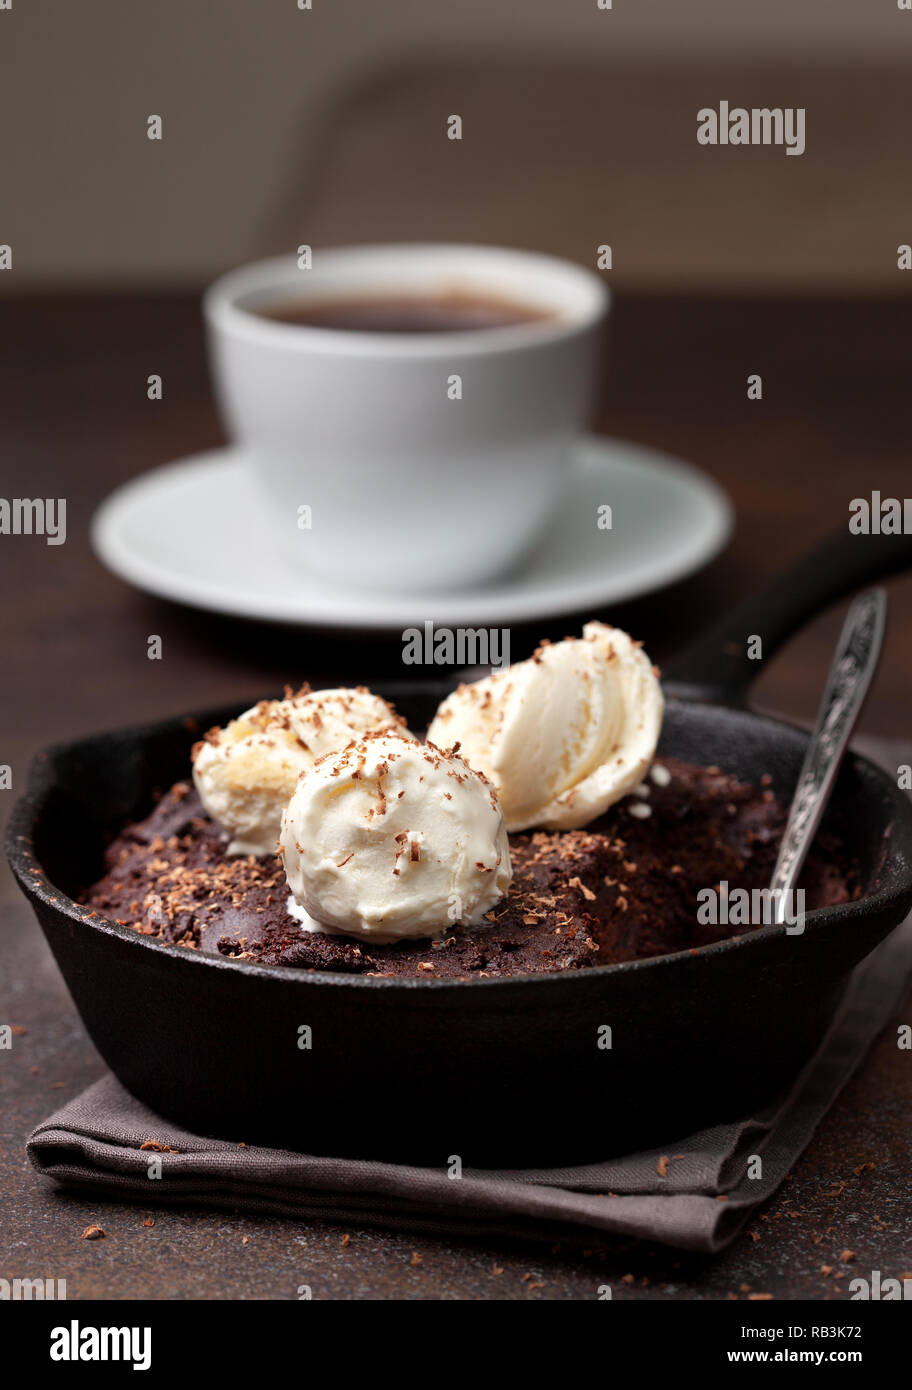 Brownie avec une glace à la vanille dans une casserole, une tasse de café sur un fond brun Banque D'Images